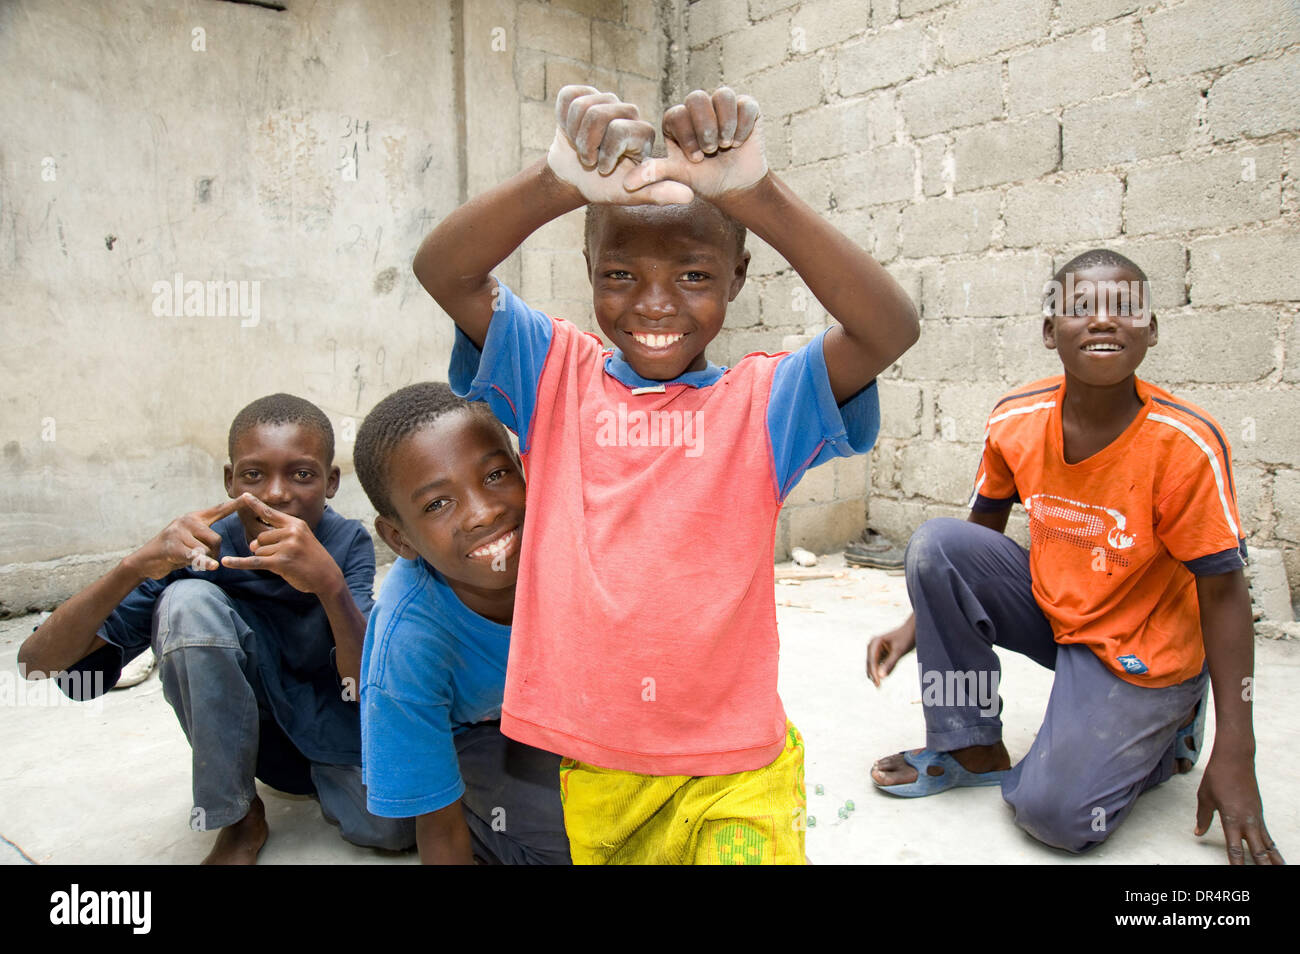 Apr 30, 2009 - Port-au-Prince, Haiti - la gioventù locale riprodurre marmi in una stanza vuota sulla base di un complesso di alloggiamento di una internazionale agenzia di aiuto che istituisce punti di acqua per i residenti locali vicino al famigerato Cite Soleil slum nel centro di Port au Prince. (Credito Immagine: © David Snyder/ZUMA Press) Foto Stock